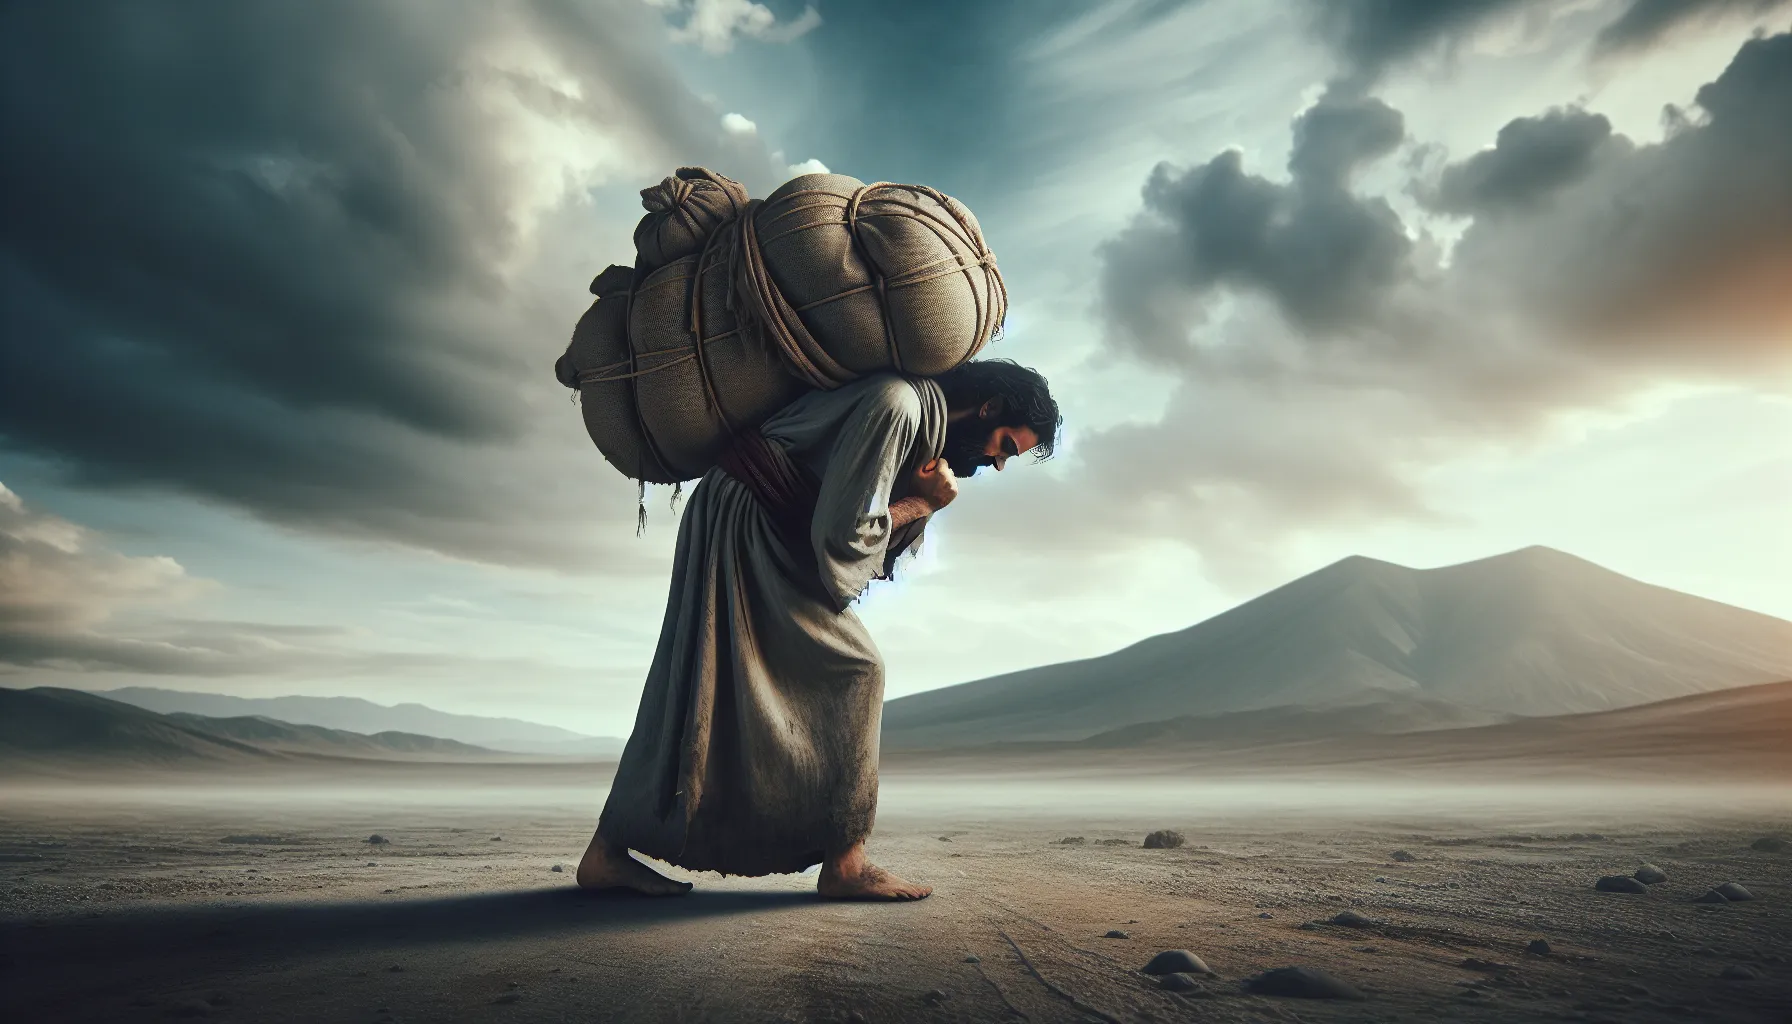 Imagen ilustrativa de una persona llevando una pesada carga sobre sus hombros